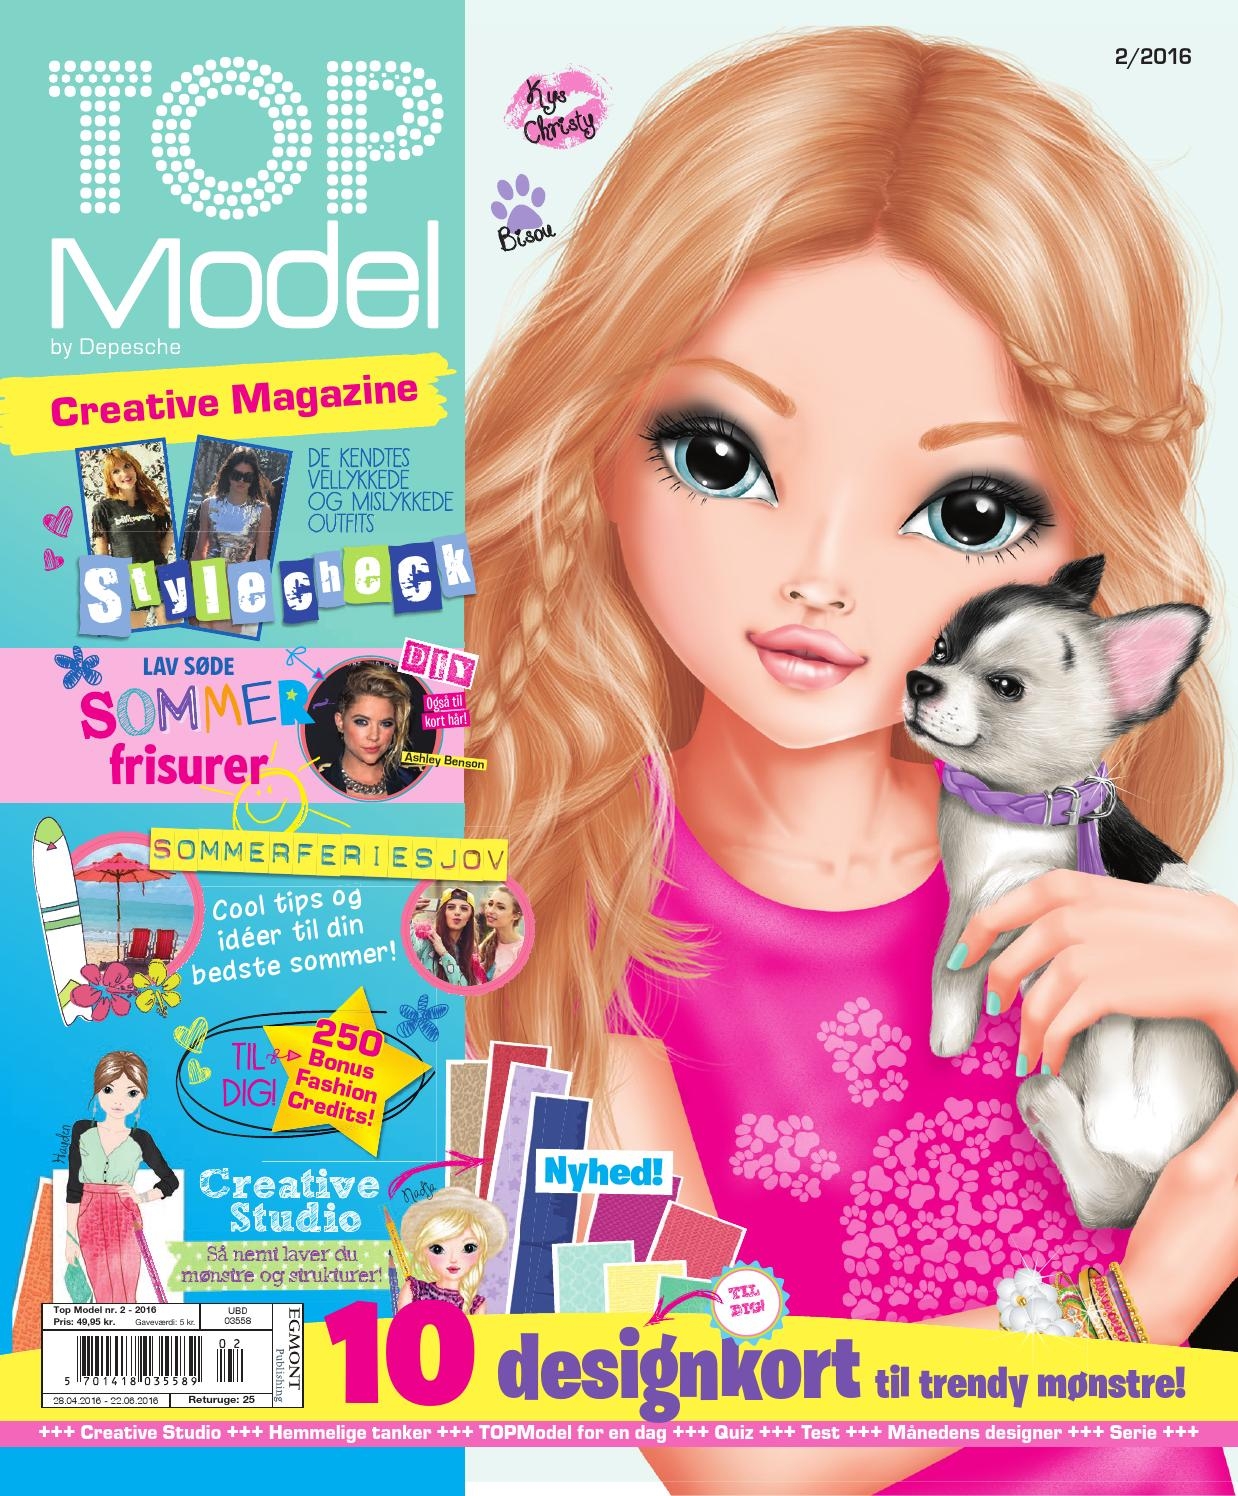 Топ модель выпуск. Top model by Depeche Дженни. Журнал топ модели. Топ модель из детского журнала. Топ-модель журнал для девочек.